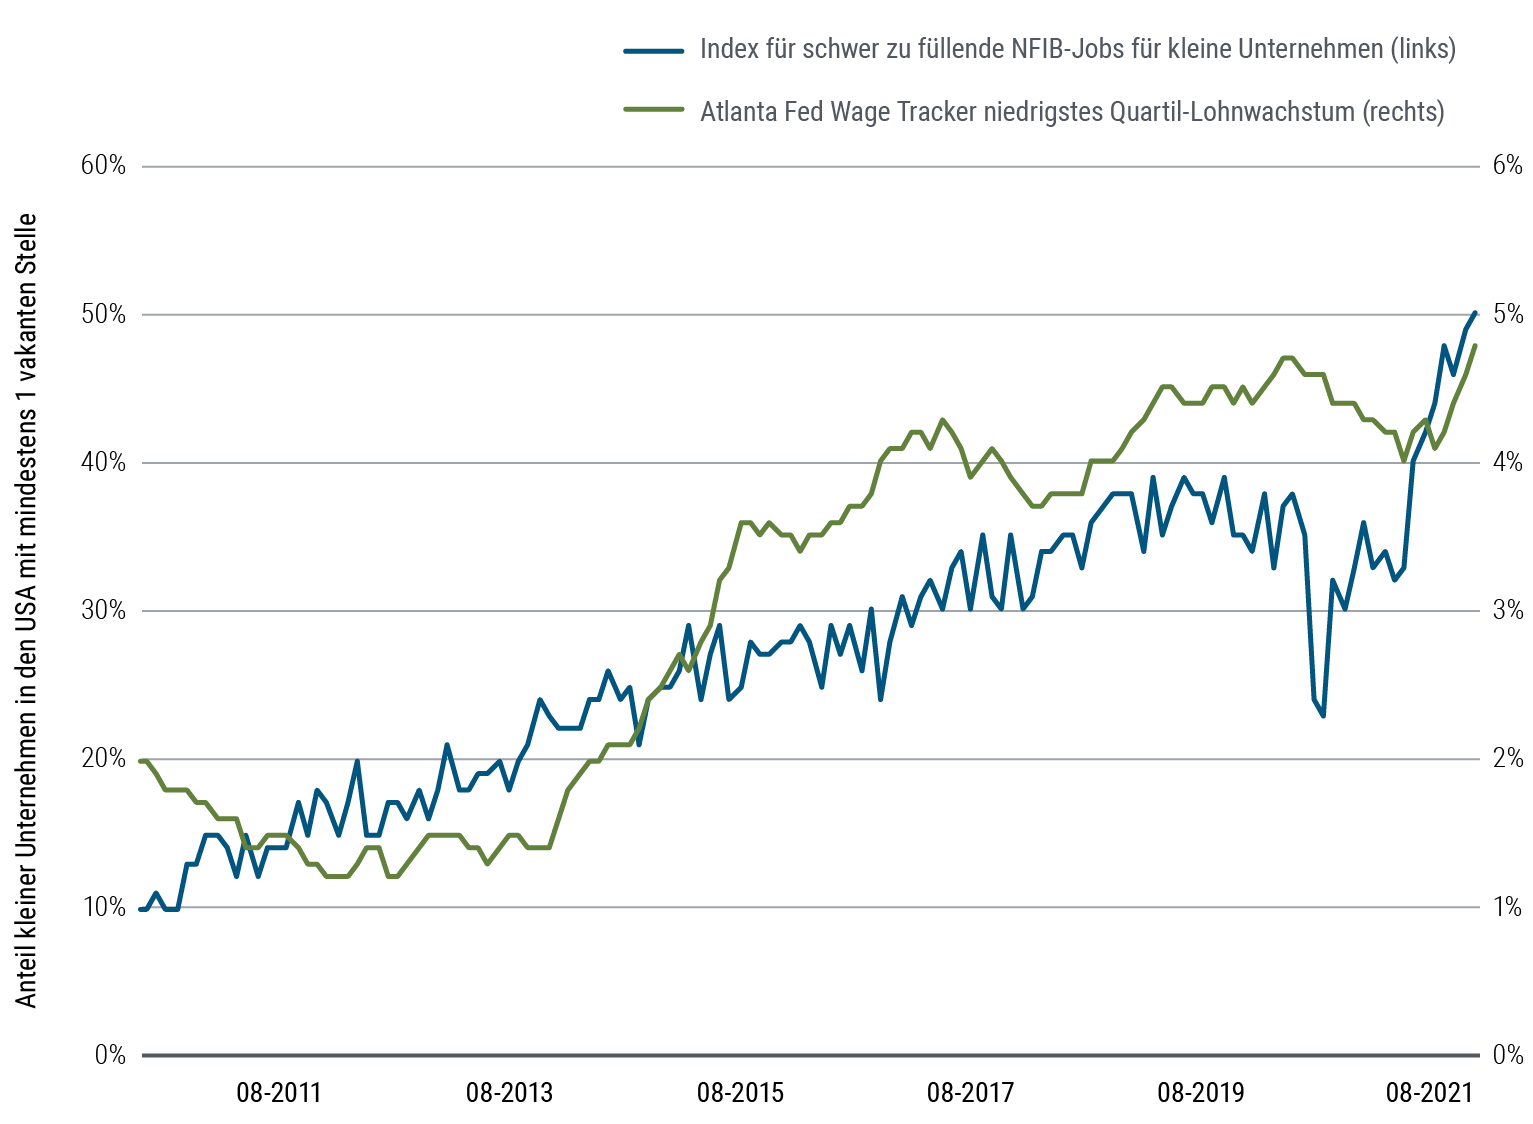 Abbildung 1 ist ein Liniendiagramm mit zwei Datensätzen zwischen August 2010 und August 2021. Der National Federation of Independent Business (U.S.) Small Business Jobs Hard to Fill Index beginnt bei 10 und steigt im Lauf des Betrachtungszeitraums auf knapp über 50. Er stieg im Allgemeinen stetig, verzeichnete jedoch einen kurzfristigen Rücksetzer im Jahr 2020. Der „Wage Tracker“ der Federal Reserve Bank of Atlanta (USA) zeichnet das Lohnwachstum im untersten Quartil auf. Der Graph beginnt im August 2010 bei etwa zwei Prozent, sinkt einige Jahre lang, steigt dann ungleichmäßig an und erreicht im August 2021 4,8 Prozent.